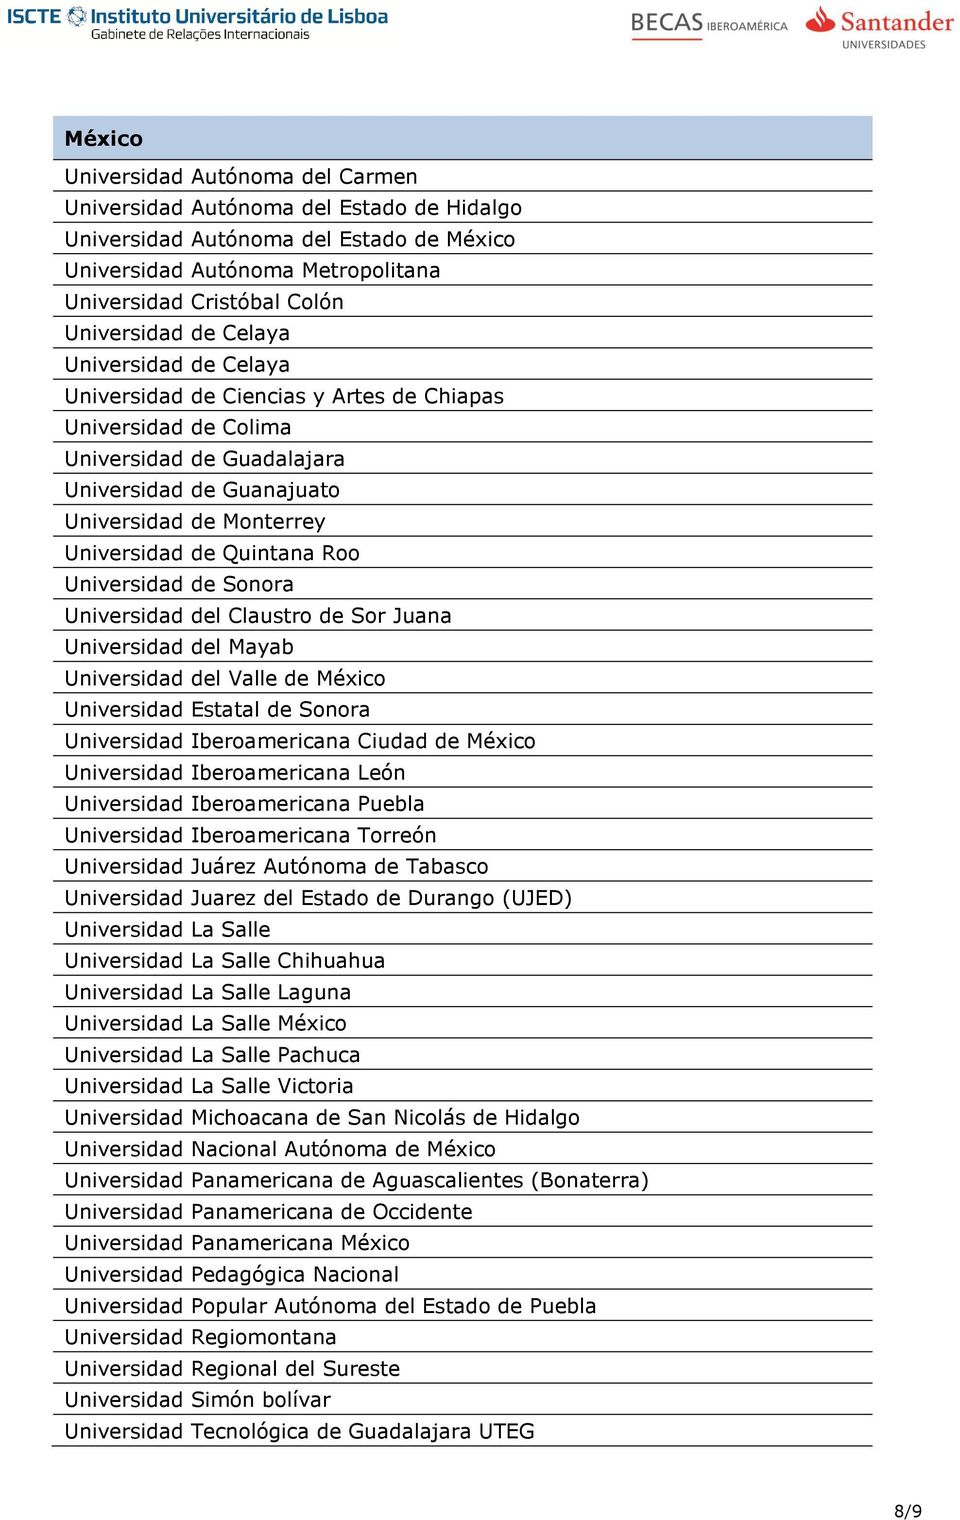 Roo Universidad de Sonora Universidad del Claustro de Sor Juana Universidad del Mayab Universidad del Valle de México Universidad Estatal de Sonora Universidad Iberoamericana Ciudad de México